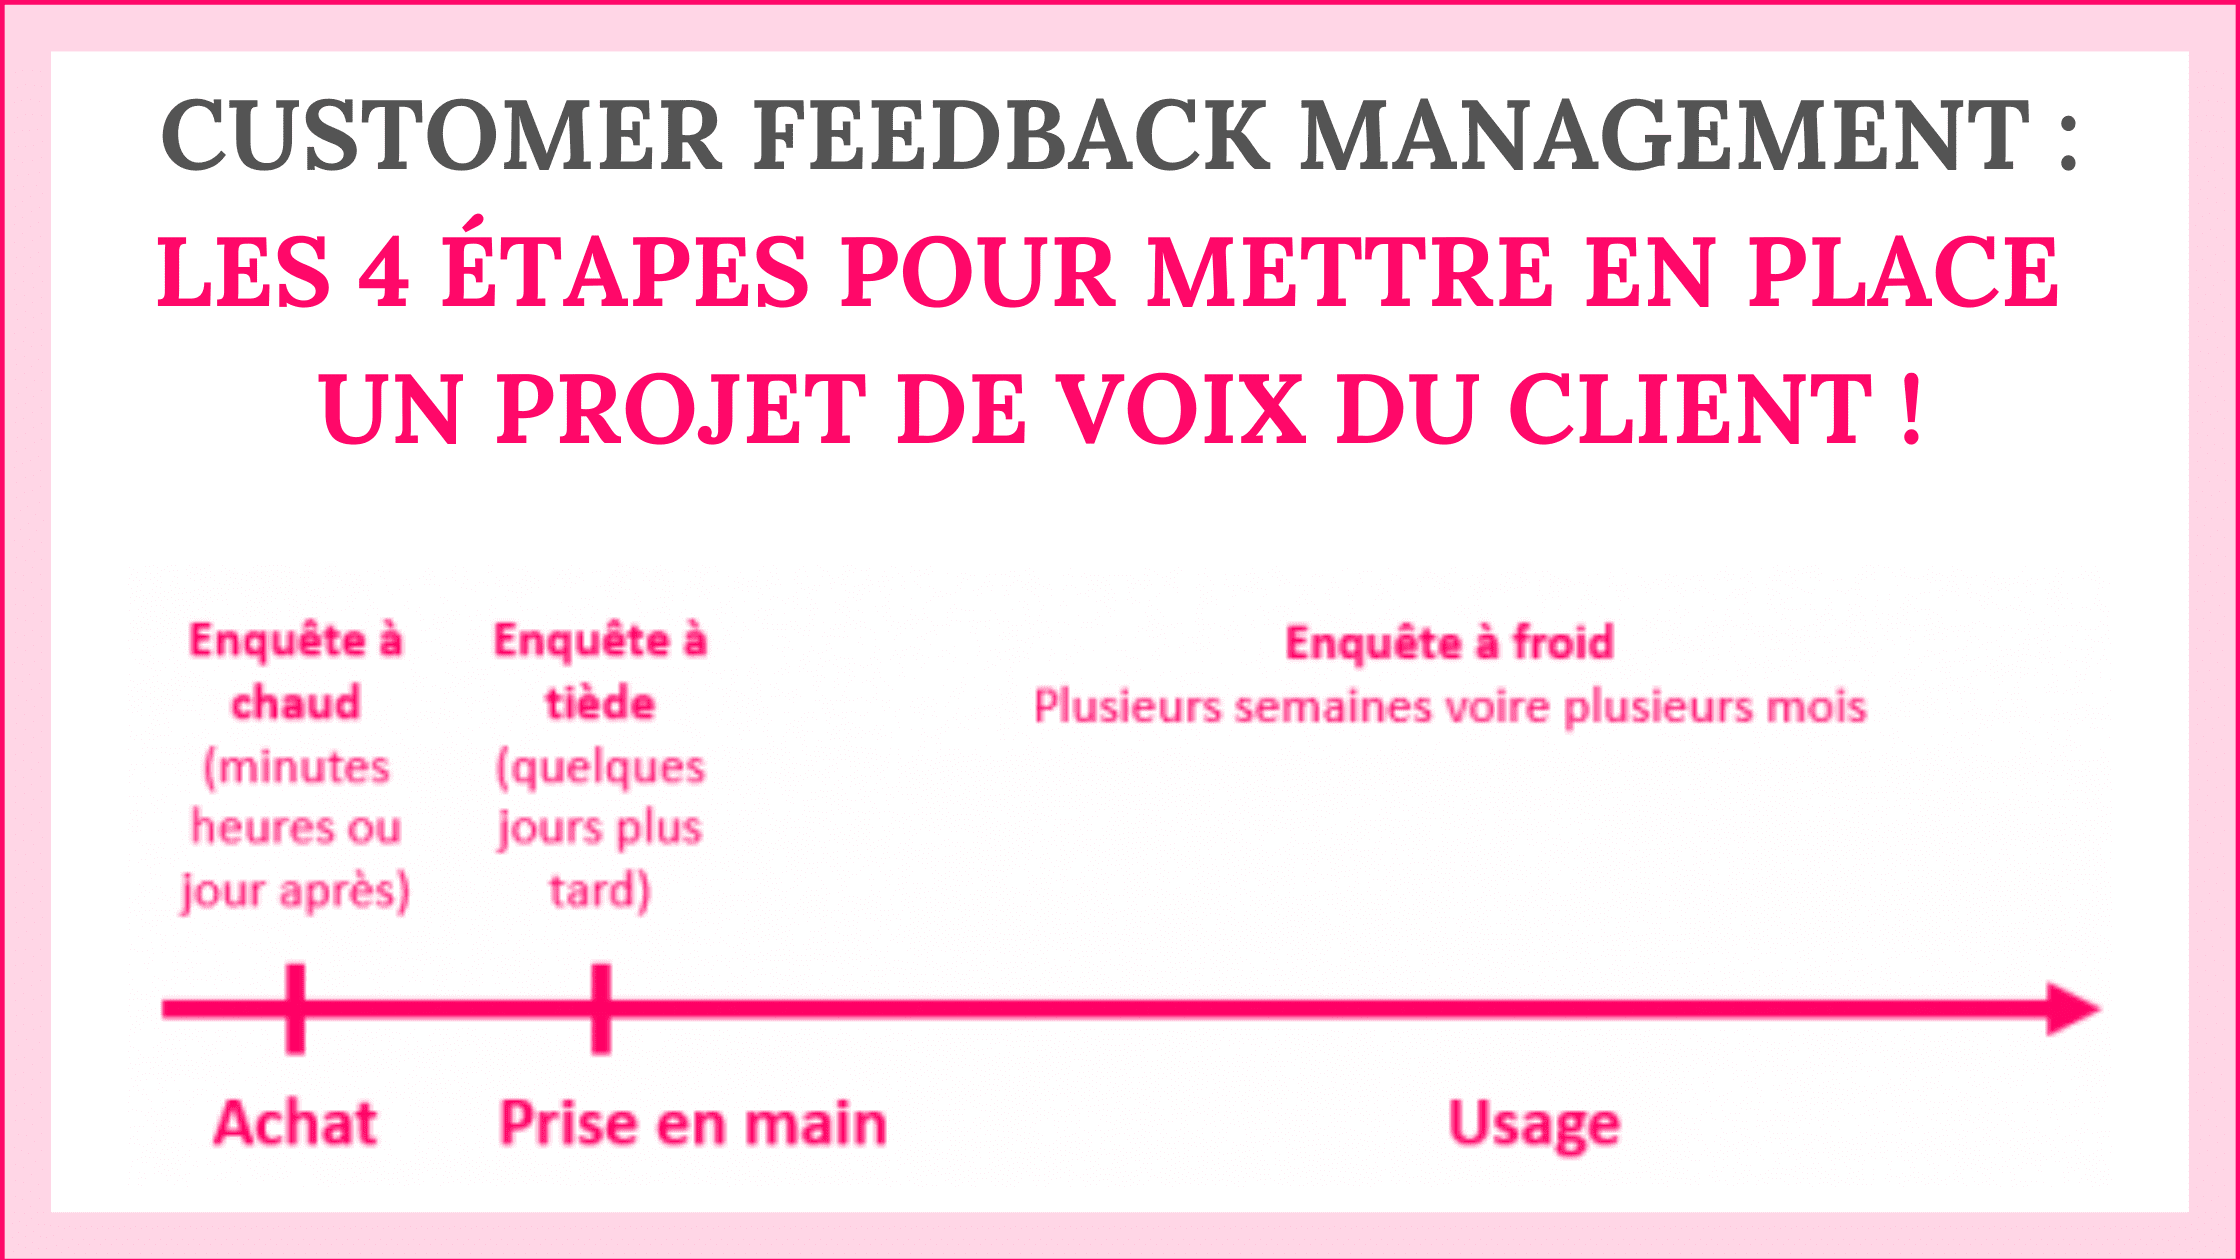 Customer Feedback Management : les 4 étapes pour mettre en place un projet de Voix du Client ! 99